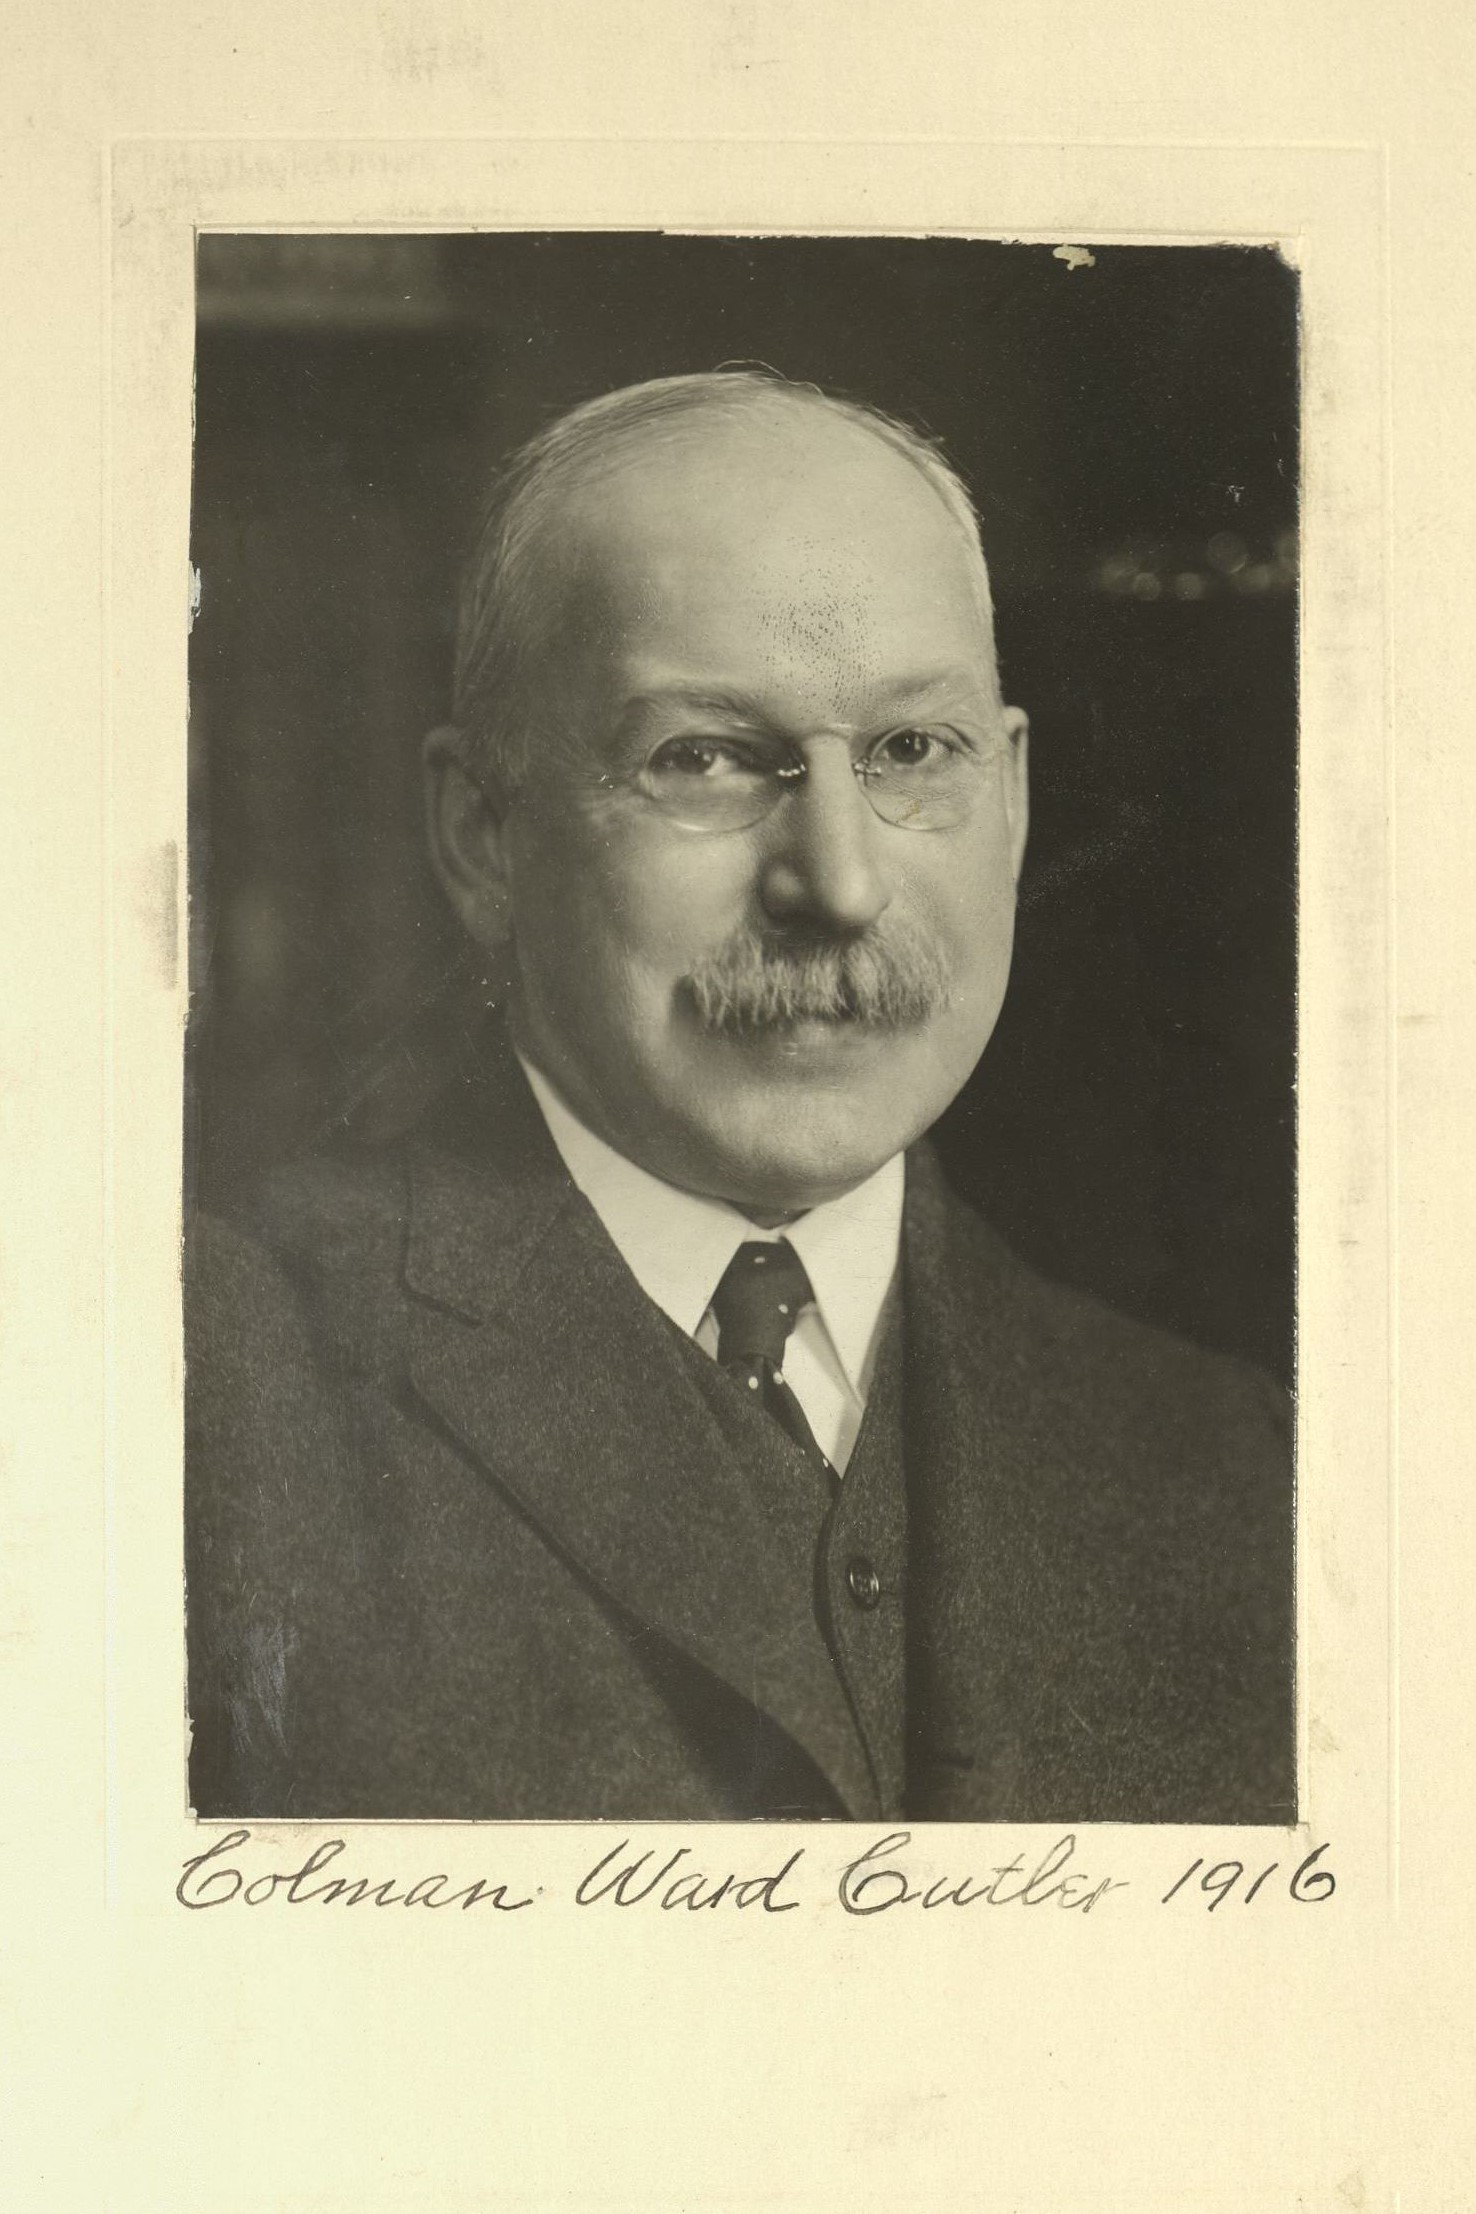 Member portrait of Colman Ward Cutler